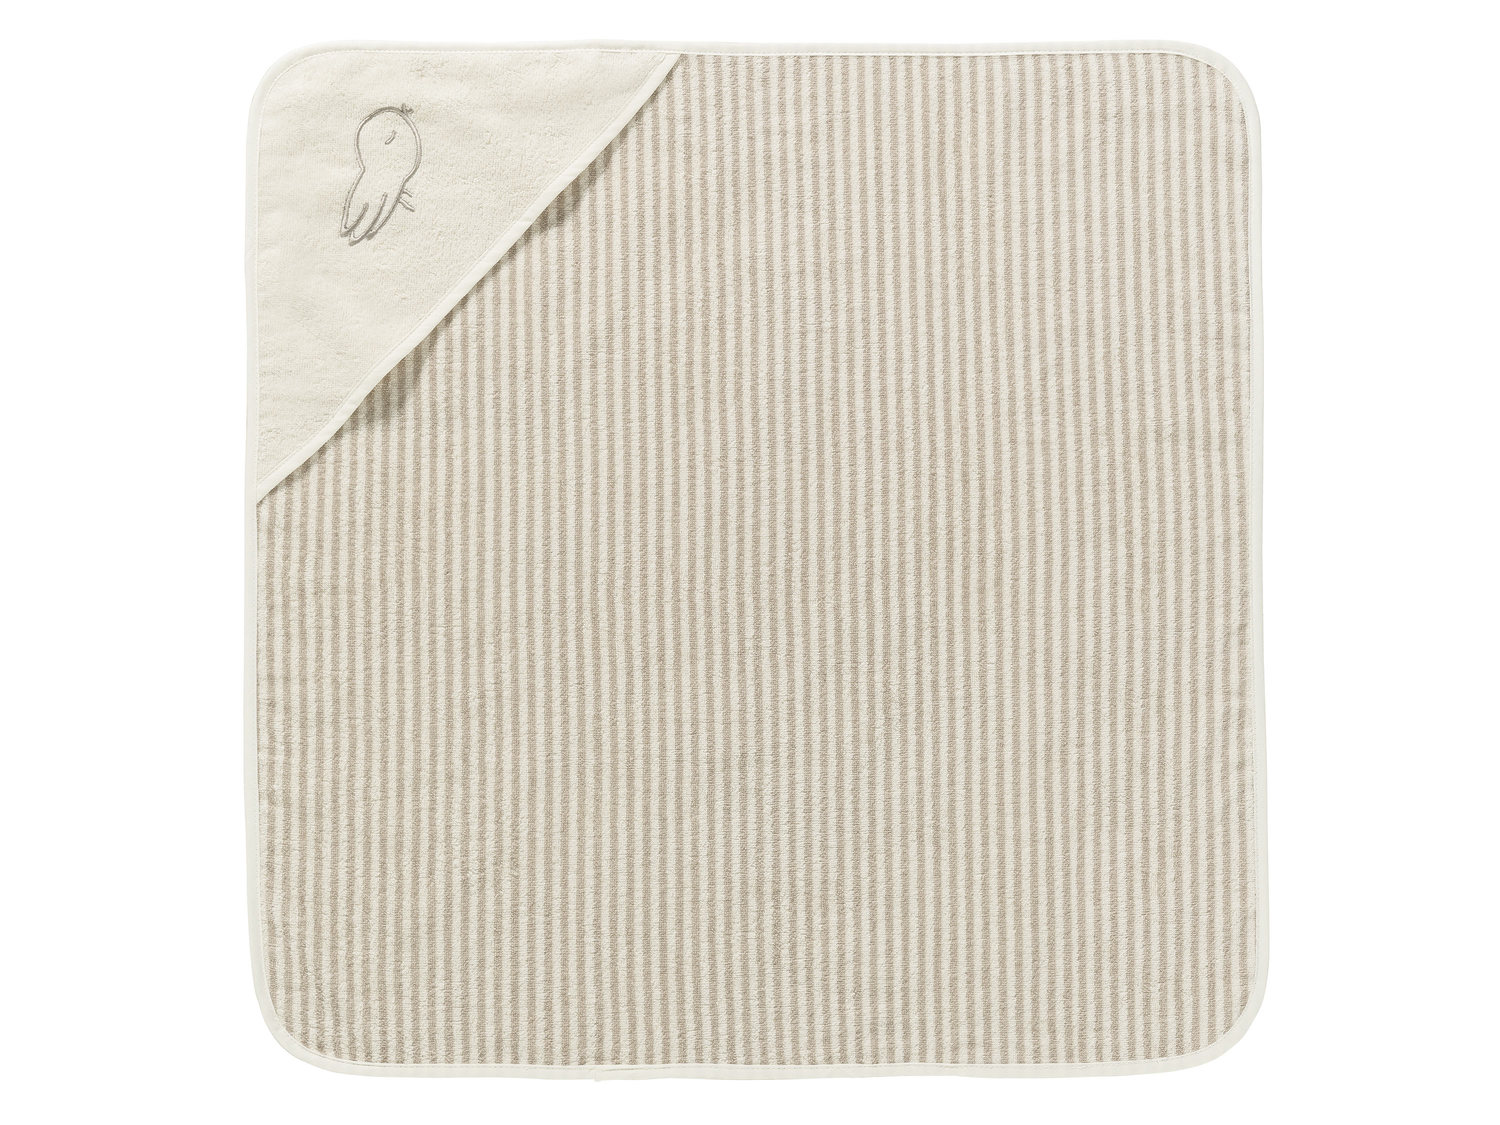 Ręcznik z kapturem Lupilu, cena 19,99 PLN 
- ok. 75 x 75 cm
- 100% biobawełny
- ...